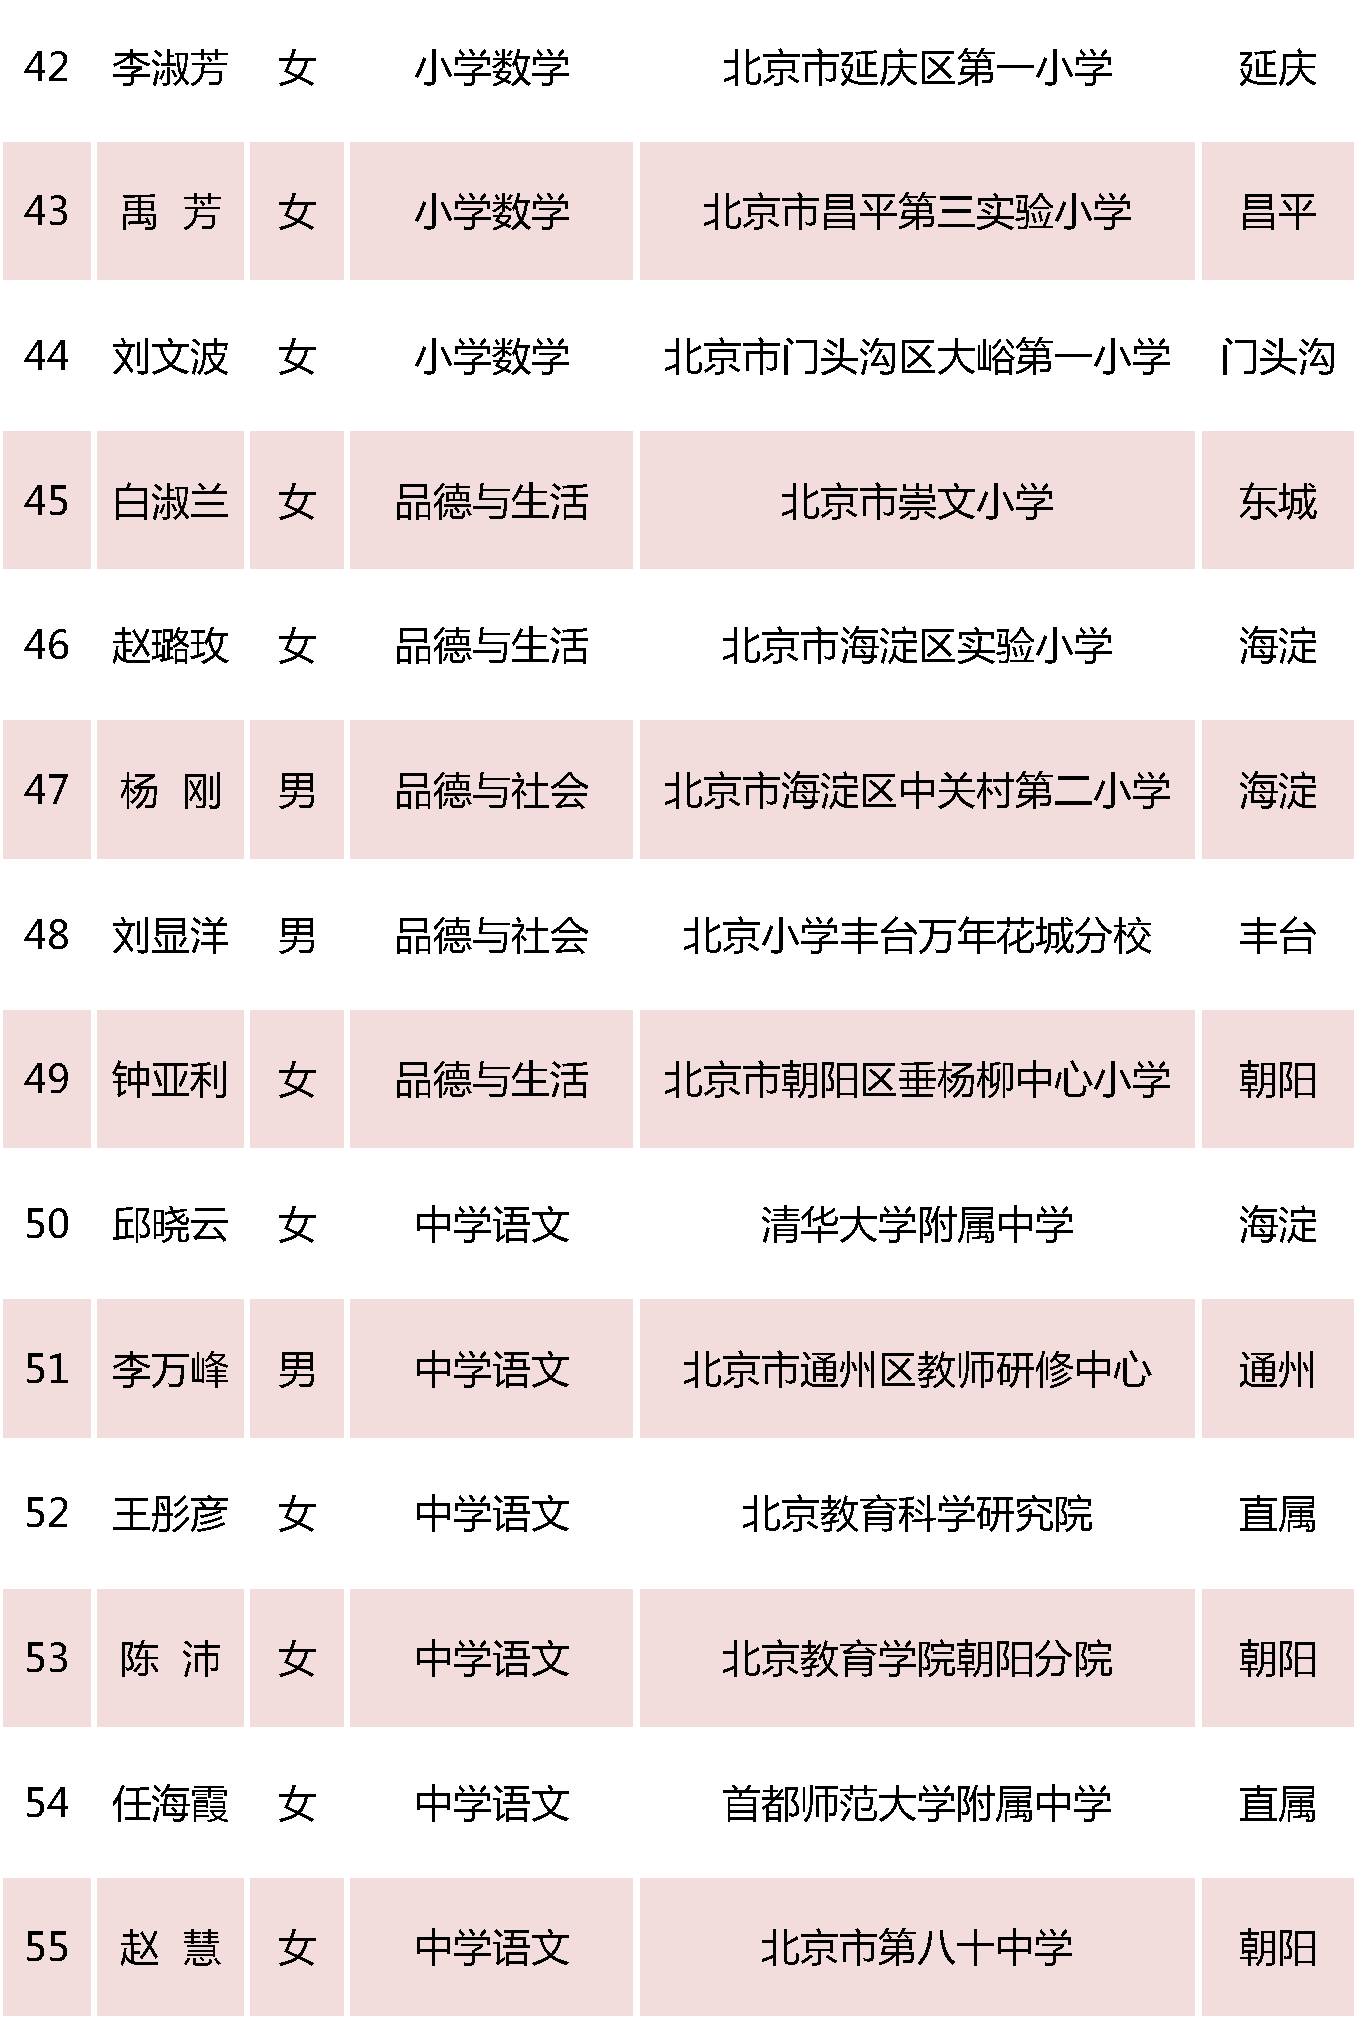 北京特级教师名单5